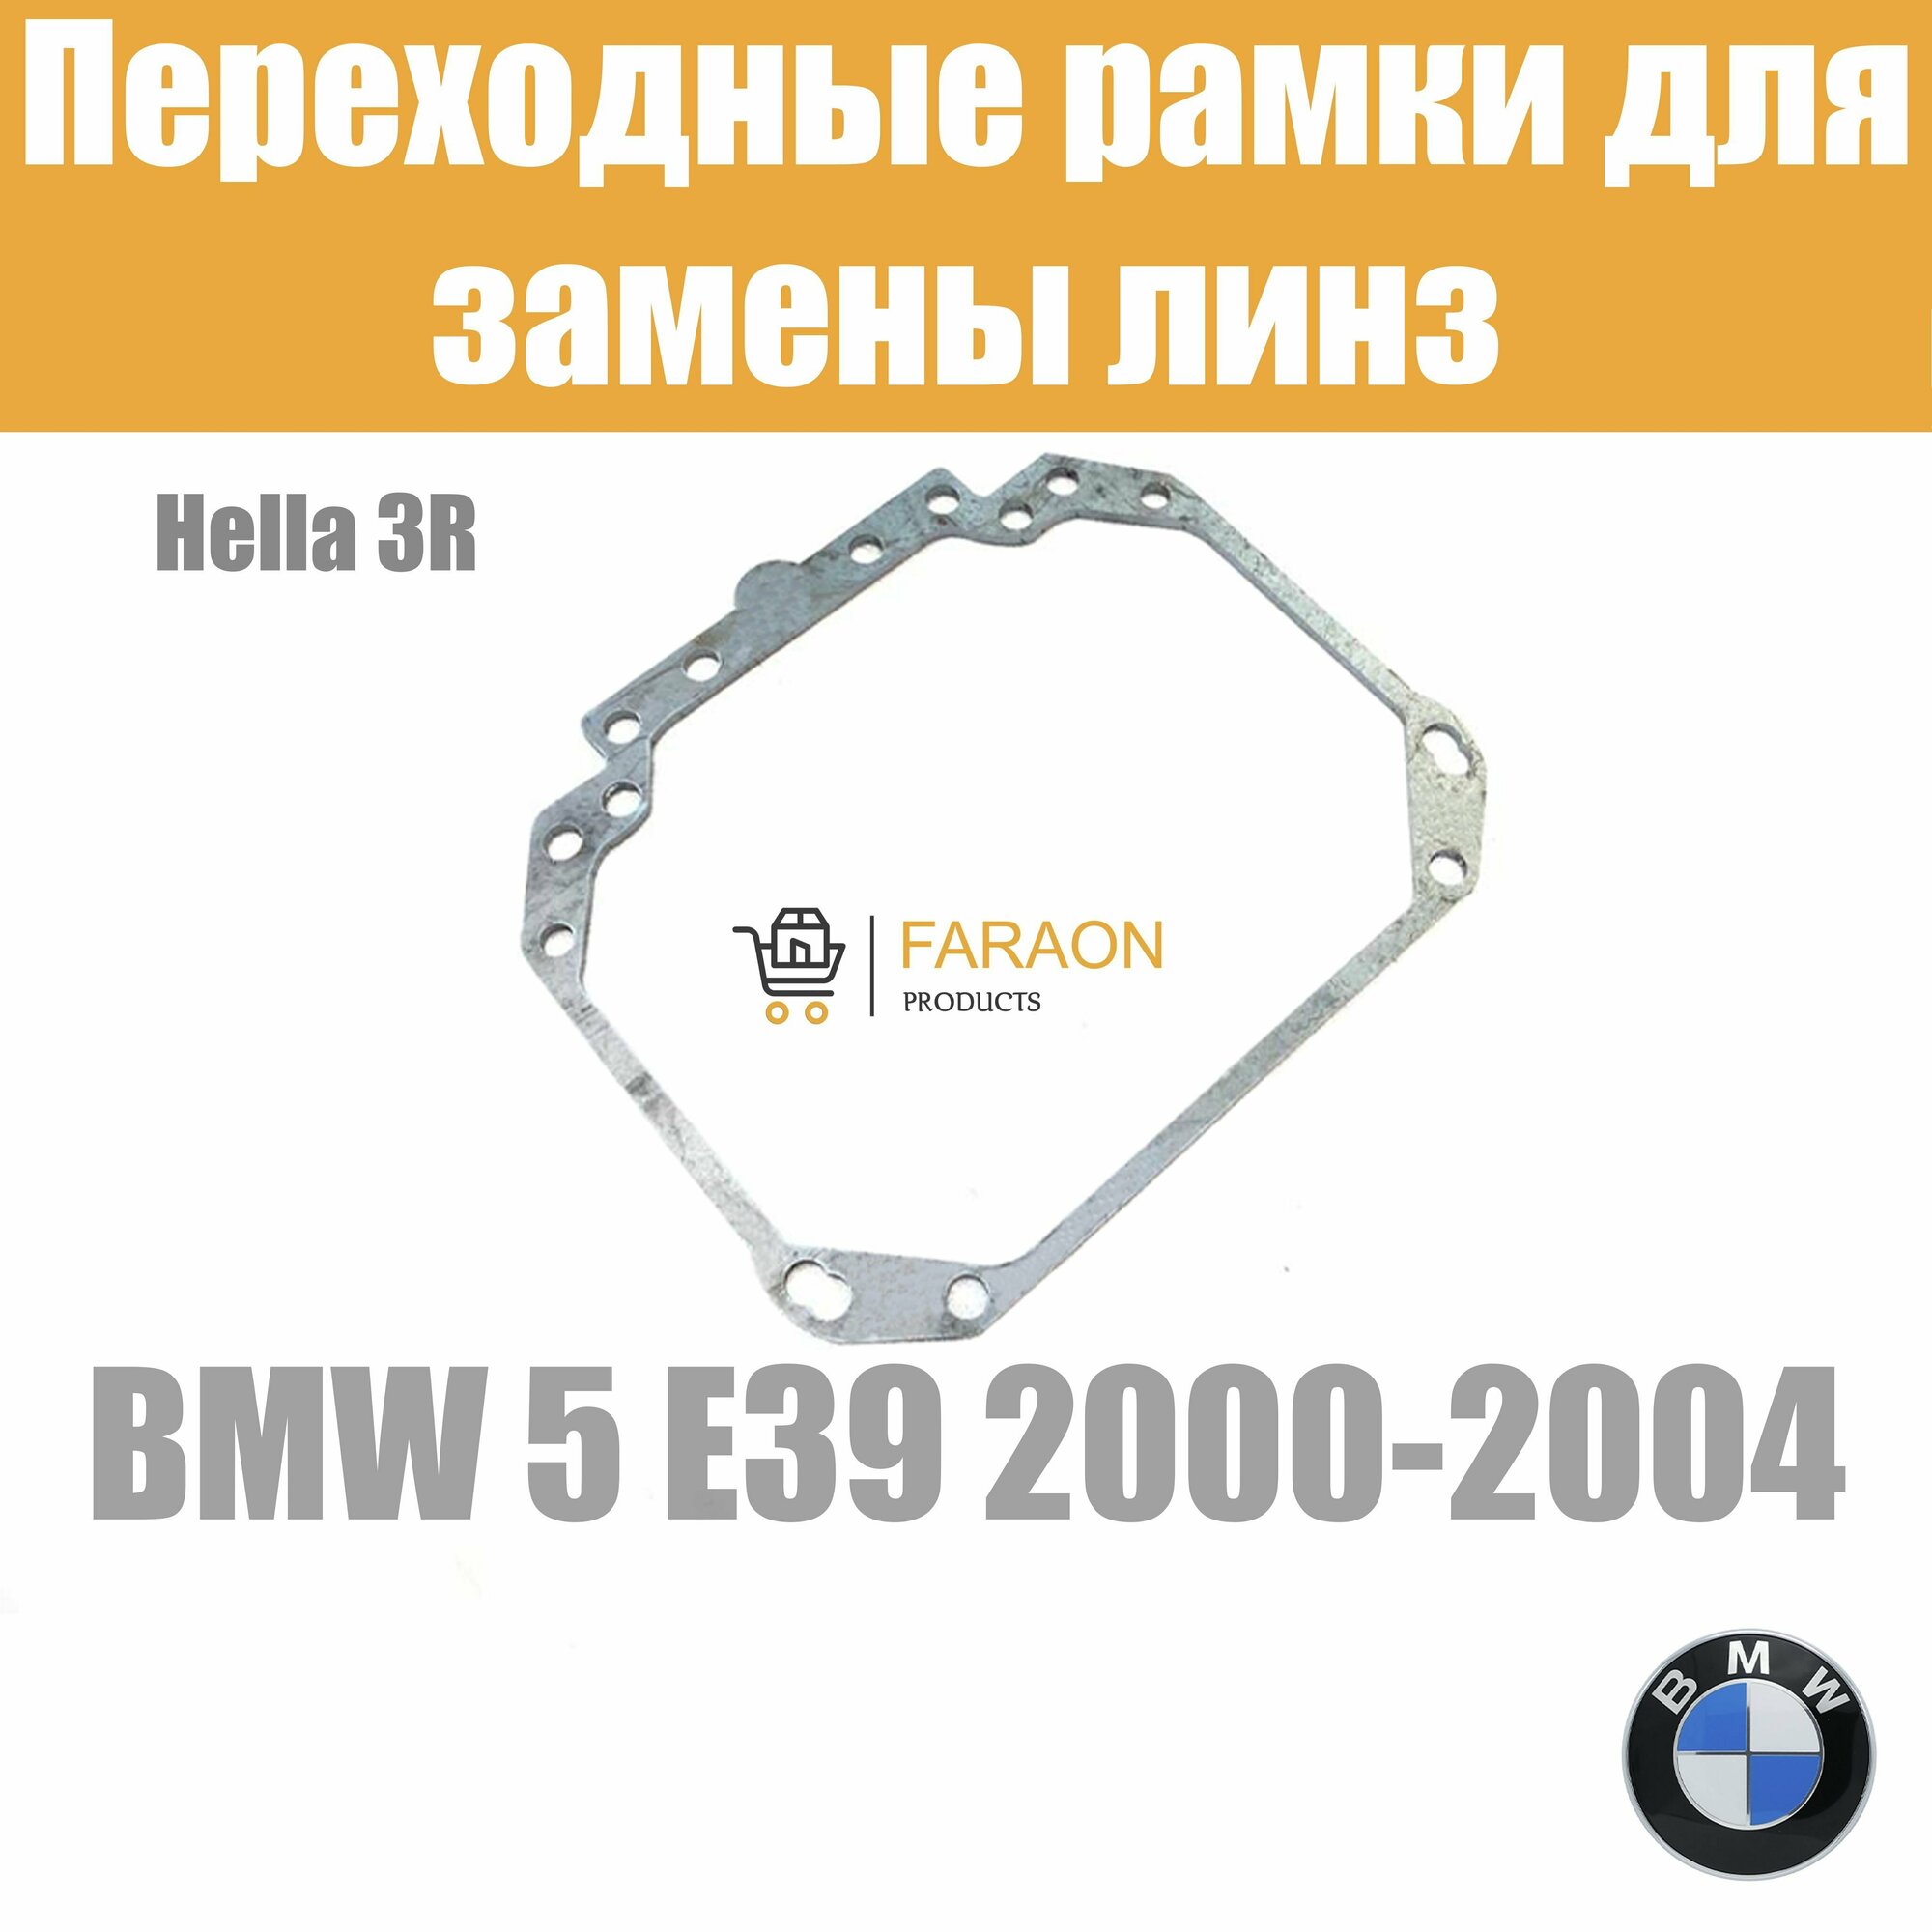 Переходные рамки для замены линз №1 на BMW 5 E39 2000-2004 Крепление Hella 3R